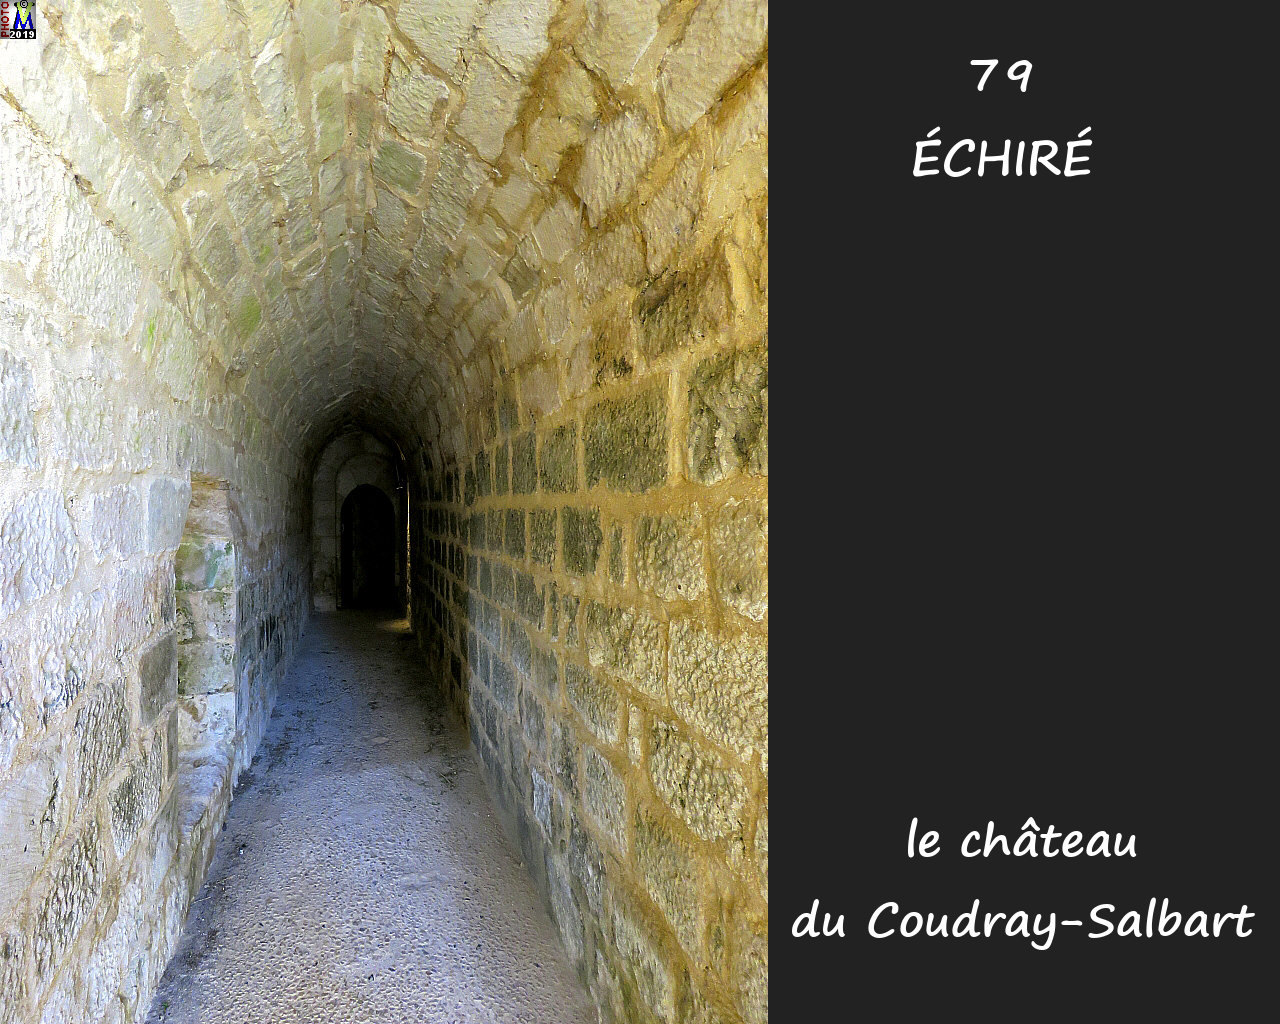 79ECHIRE_chateau_1178.jpg